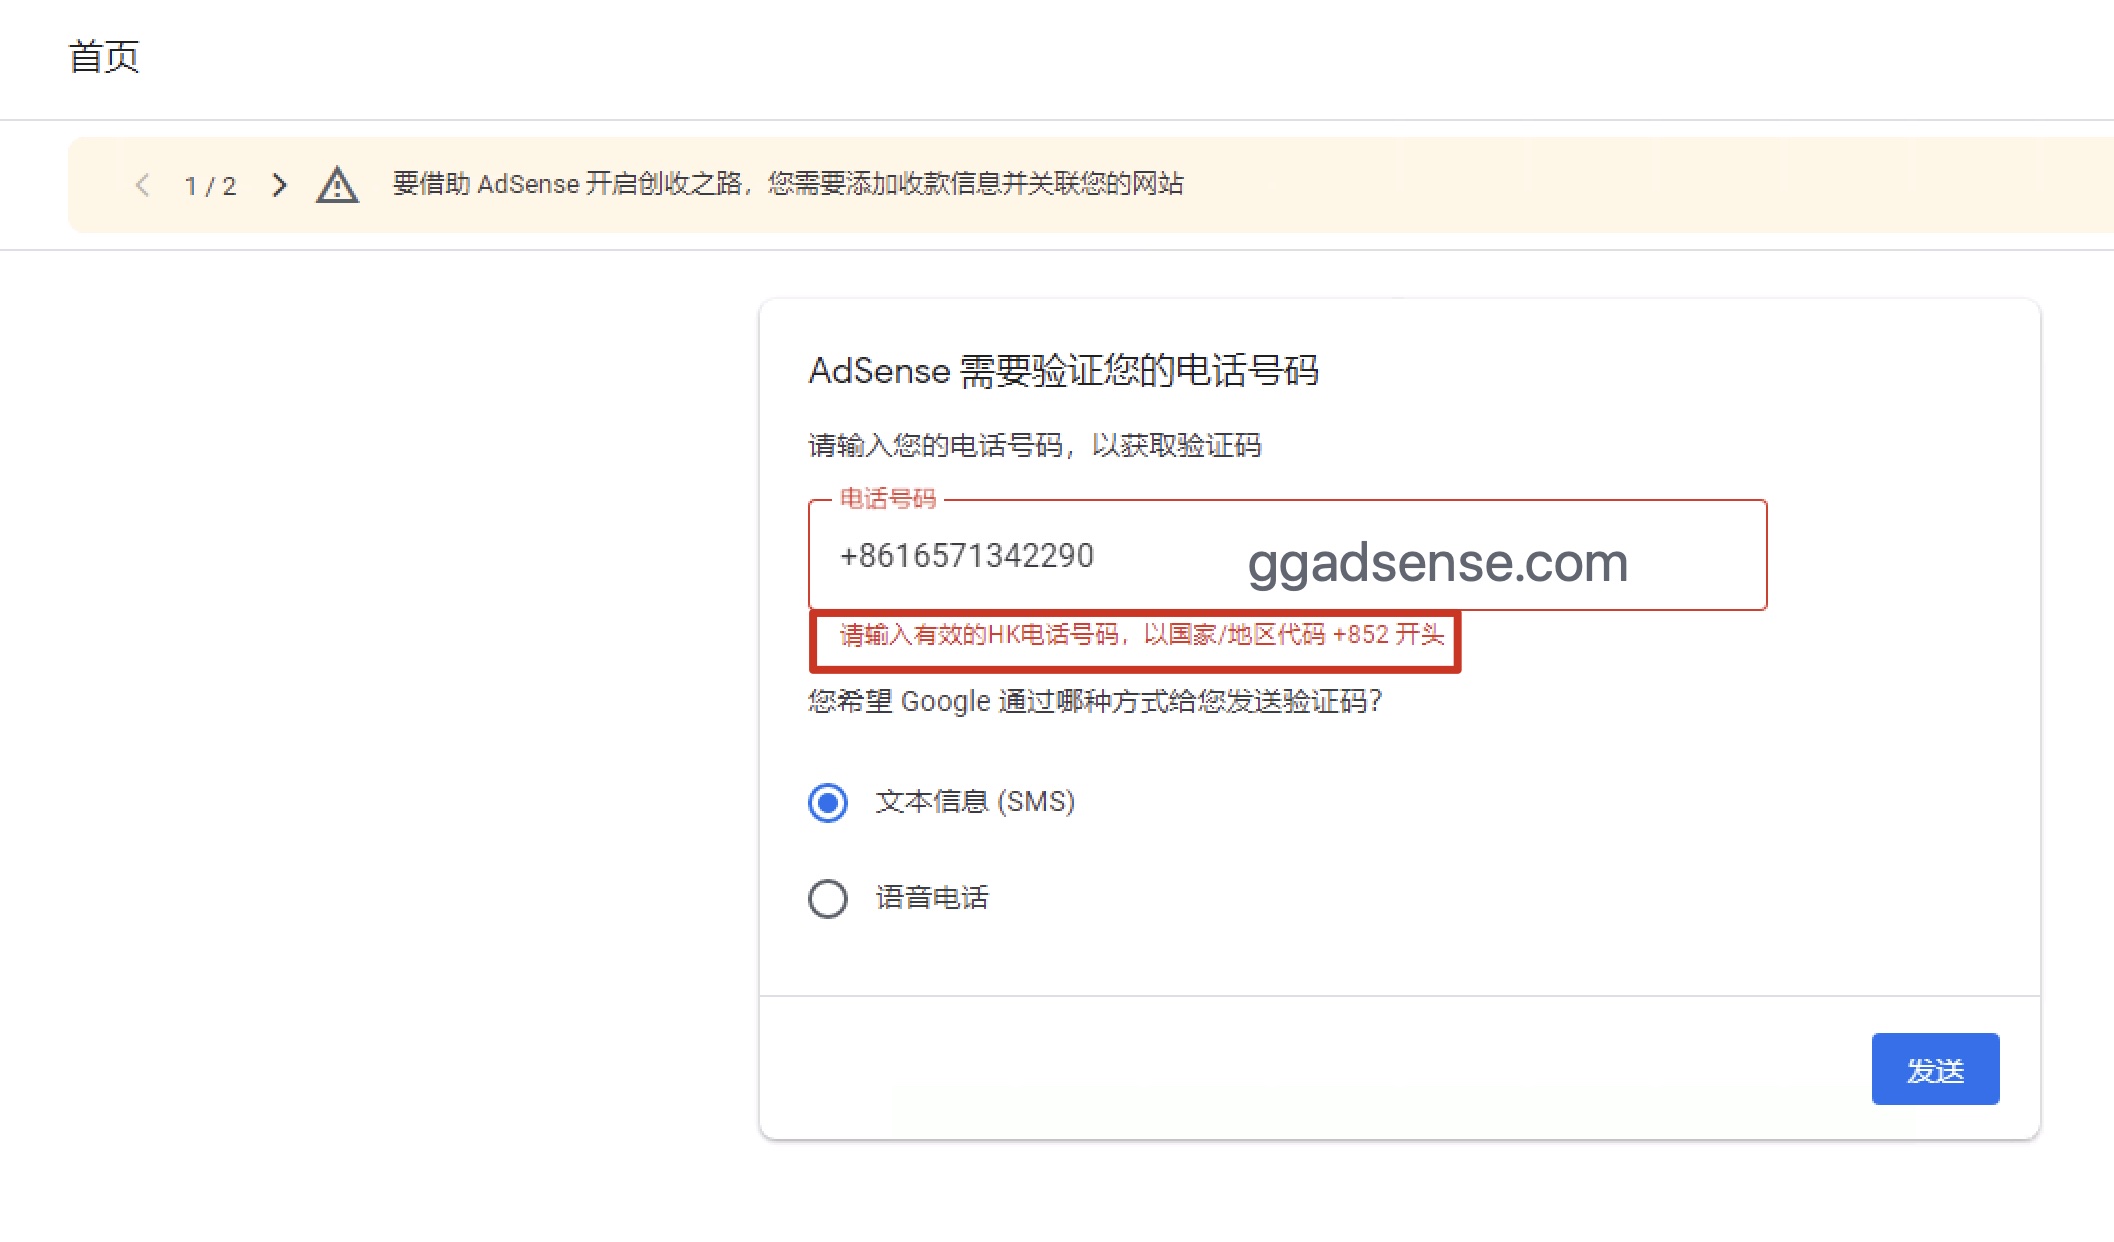 adsense/admob需要验证您的电话号码，请输入有效的HK电话号码-GG联盟挑战